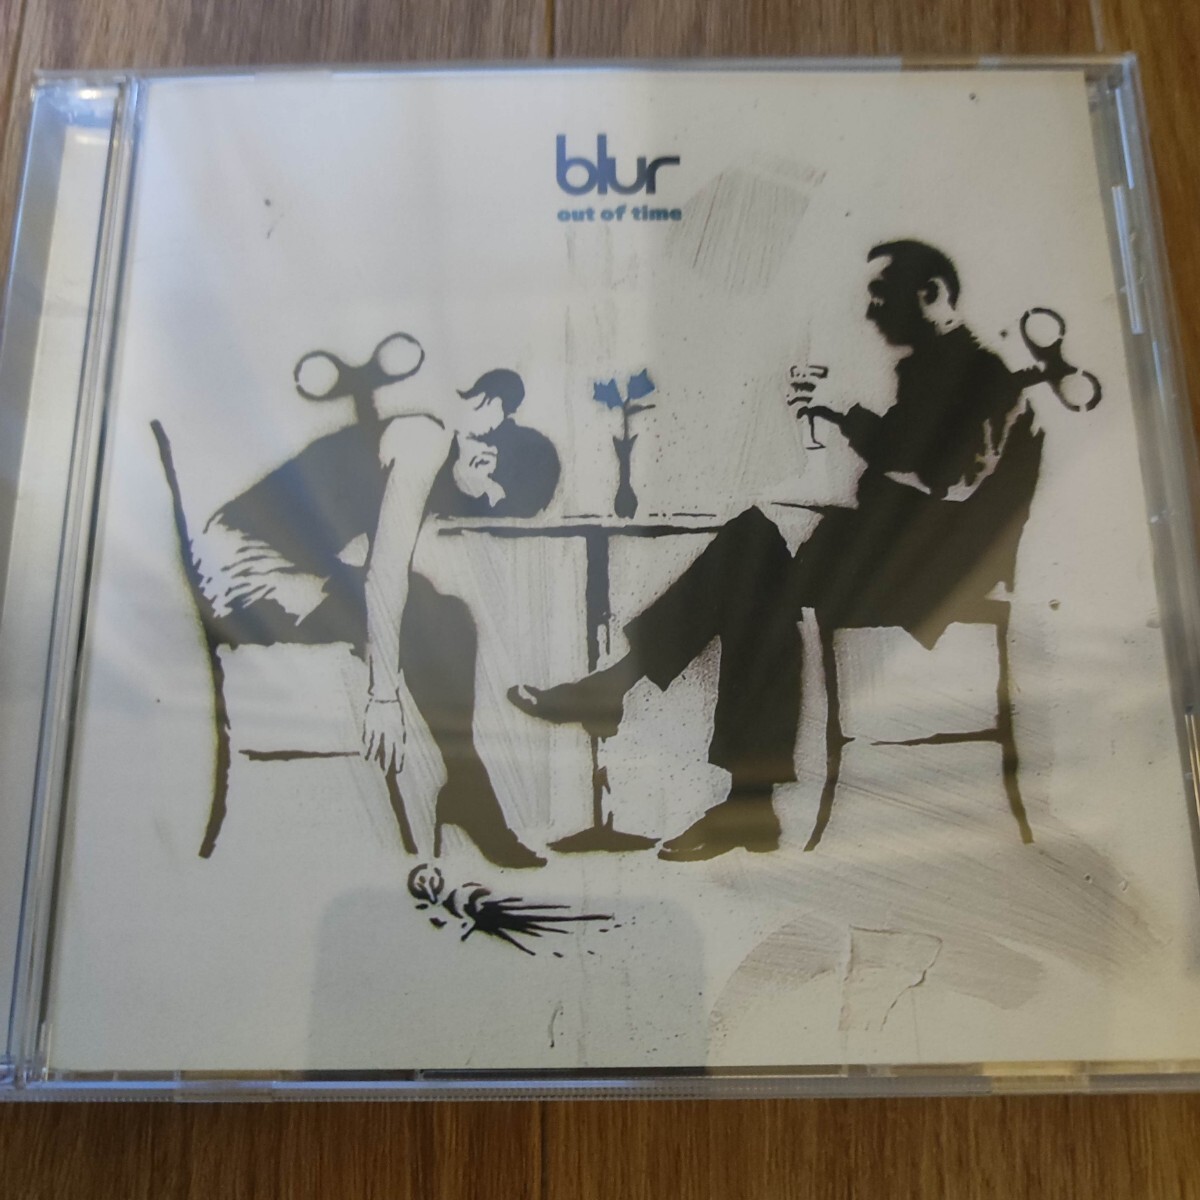 [ б/у CD]BLUR[Out Of Time] ценный!Banksy жакет Япония ограничение Mini альбом с поясом оби 2003 год оригинал запись TOCP-61079